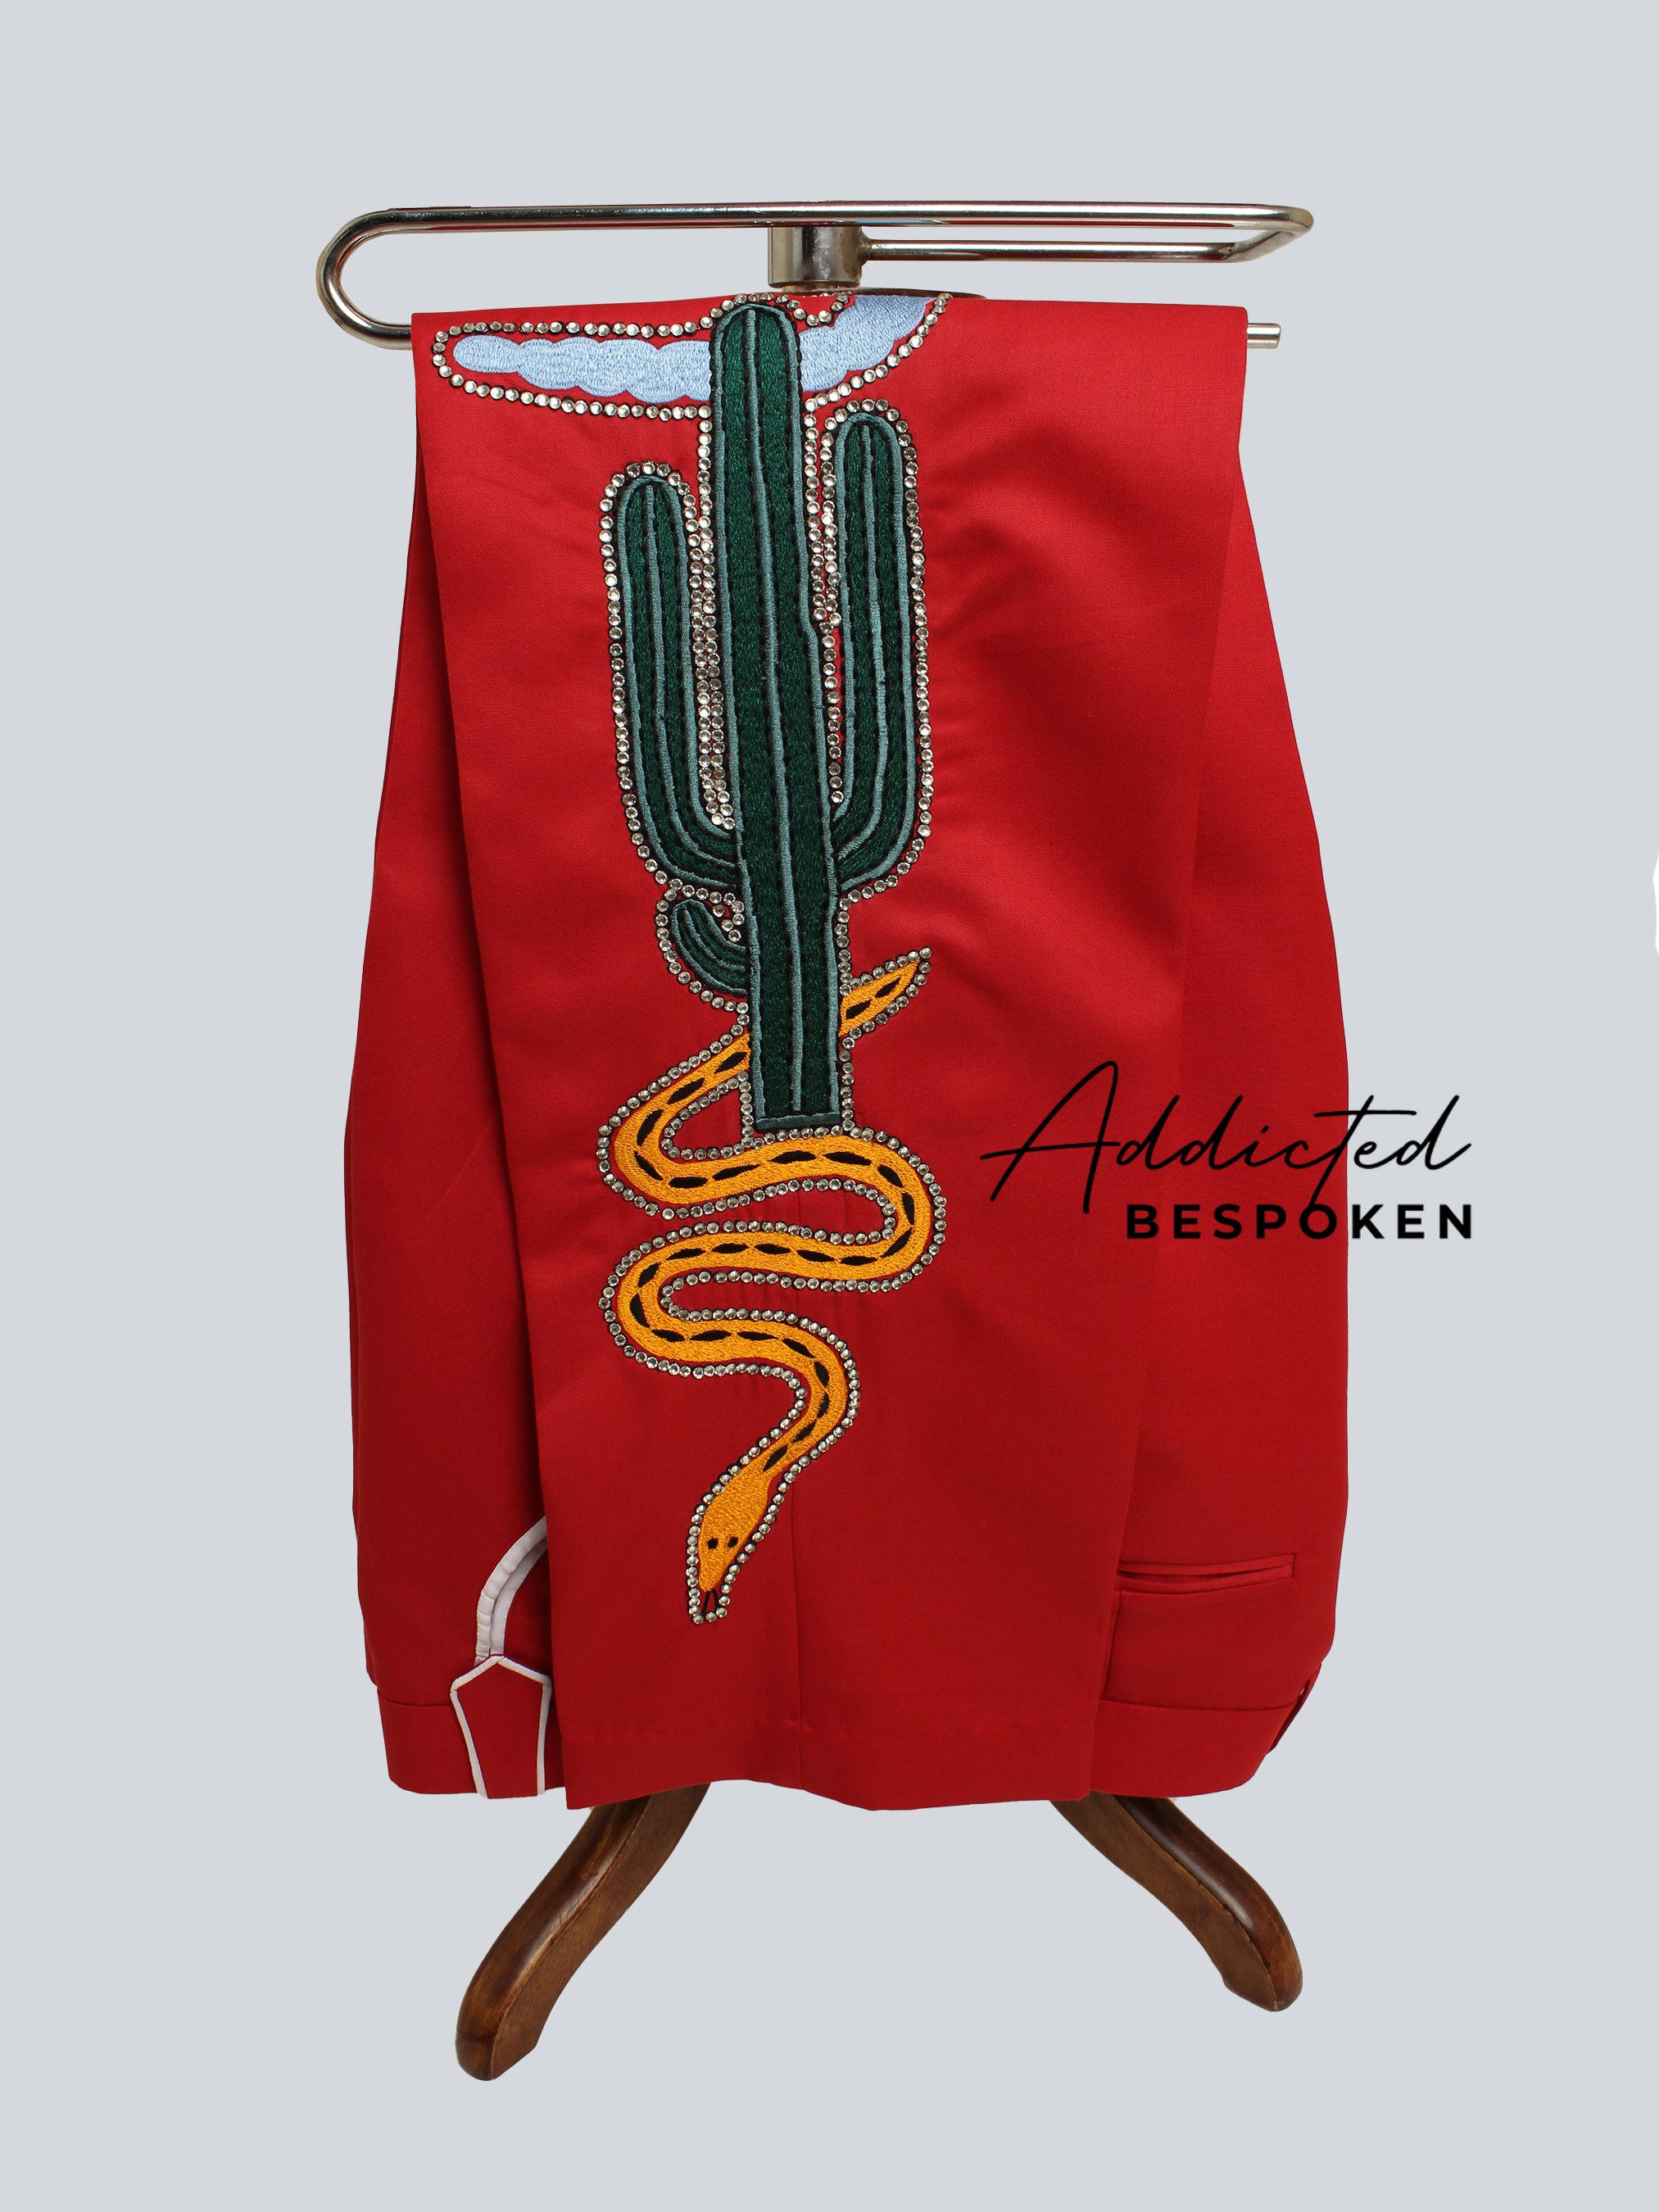 Red Skeleton & Saloon  Suit